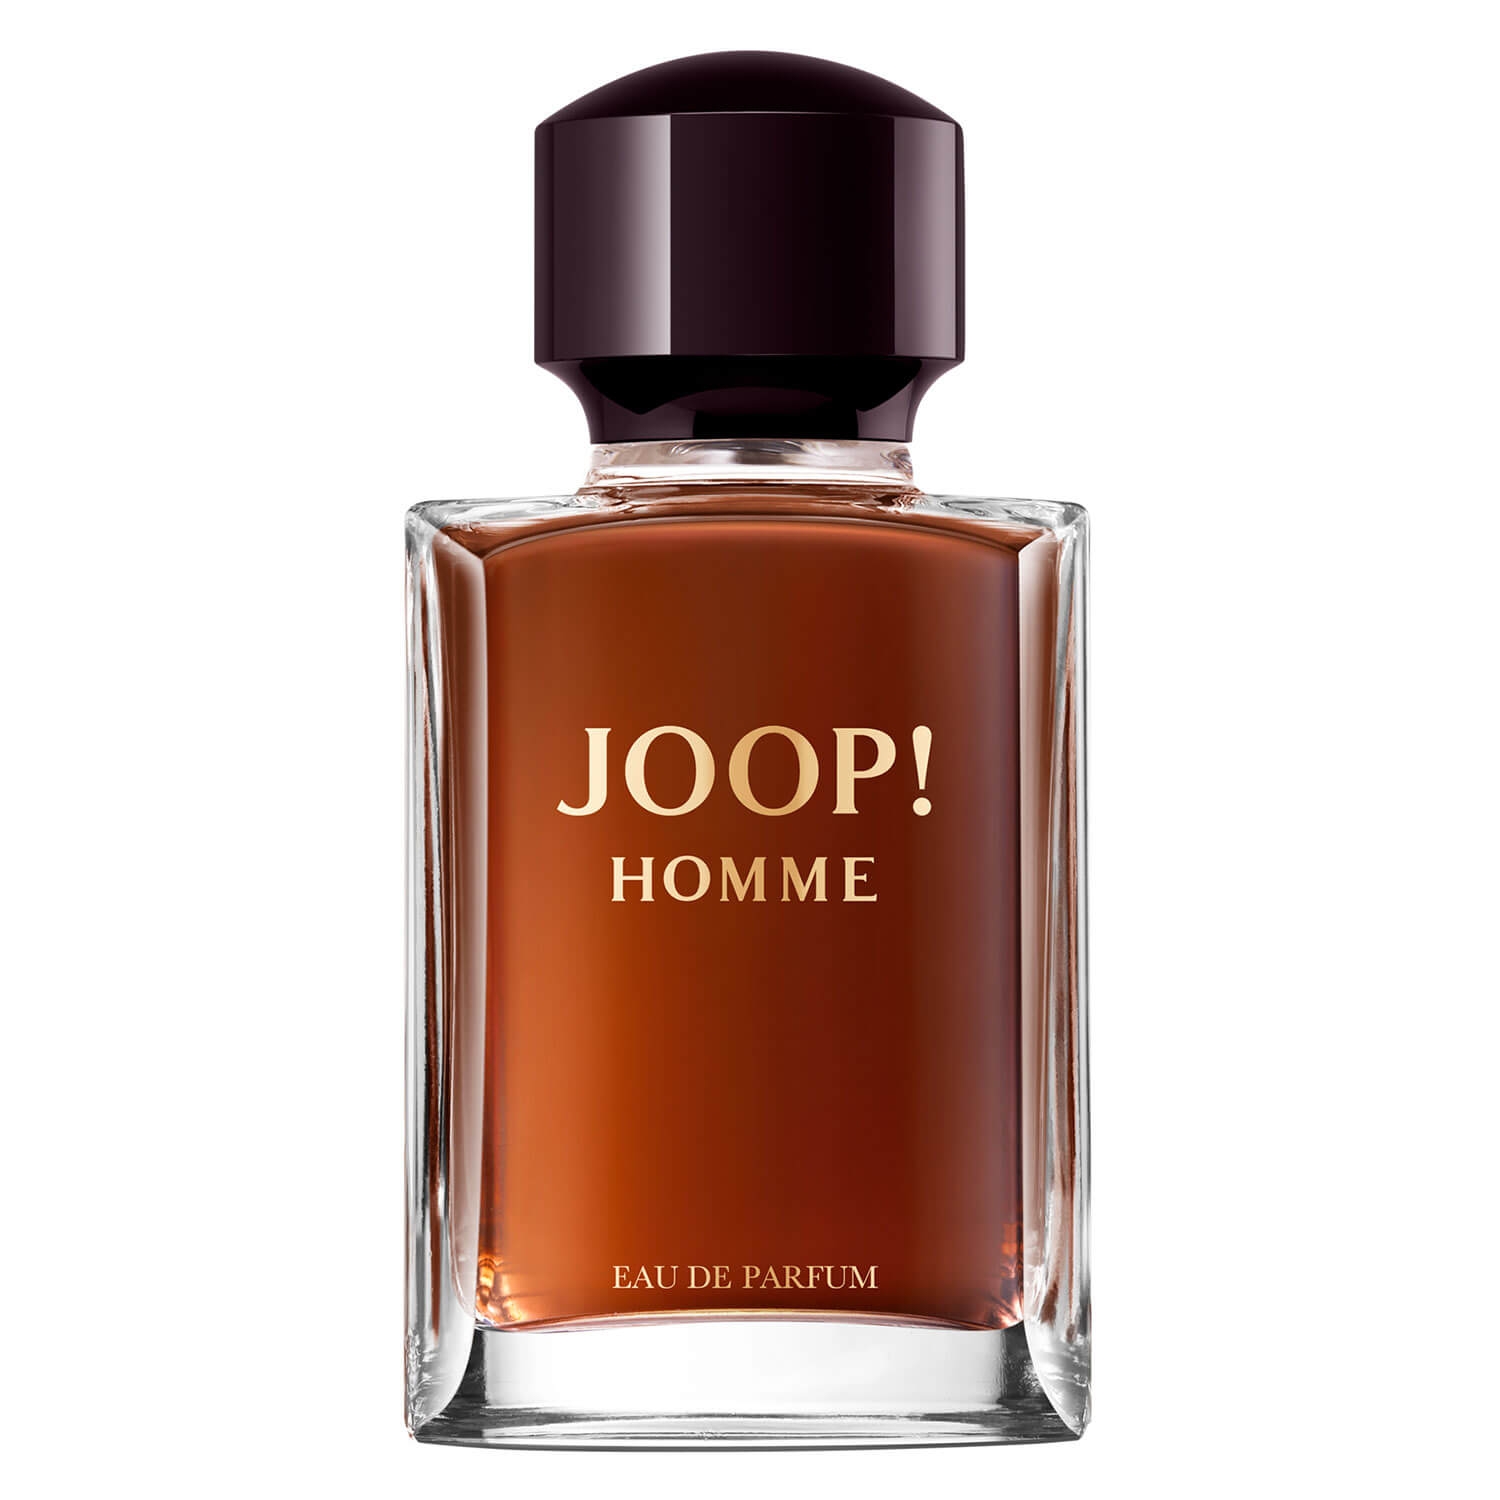 Product image from Joop! Homme - Eau de Parfum